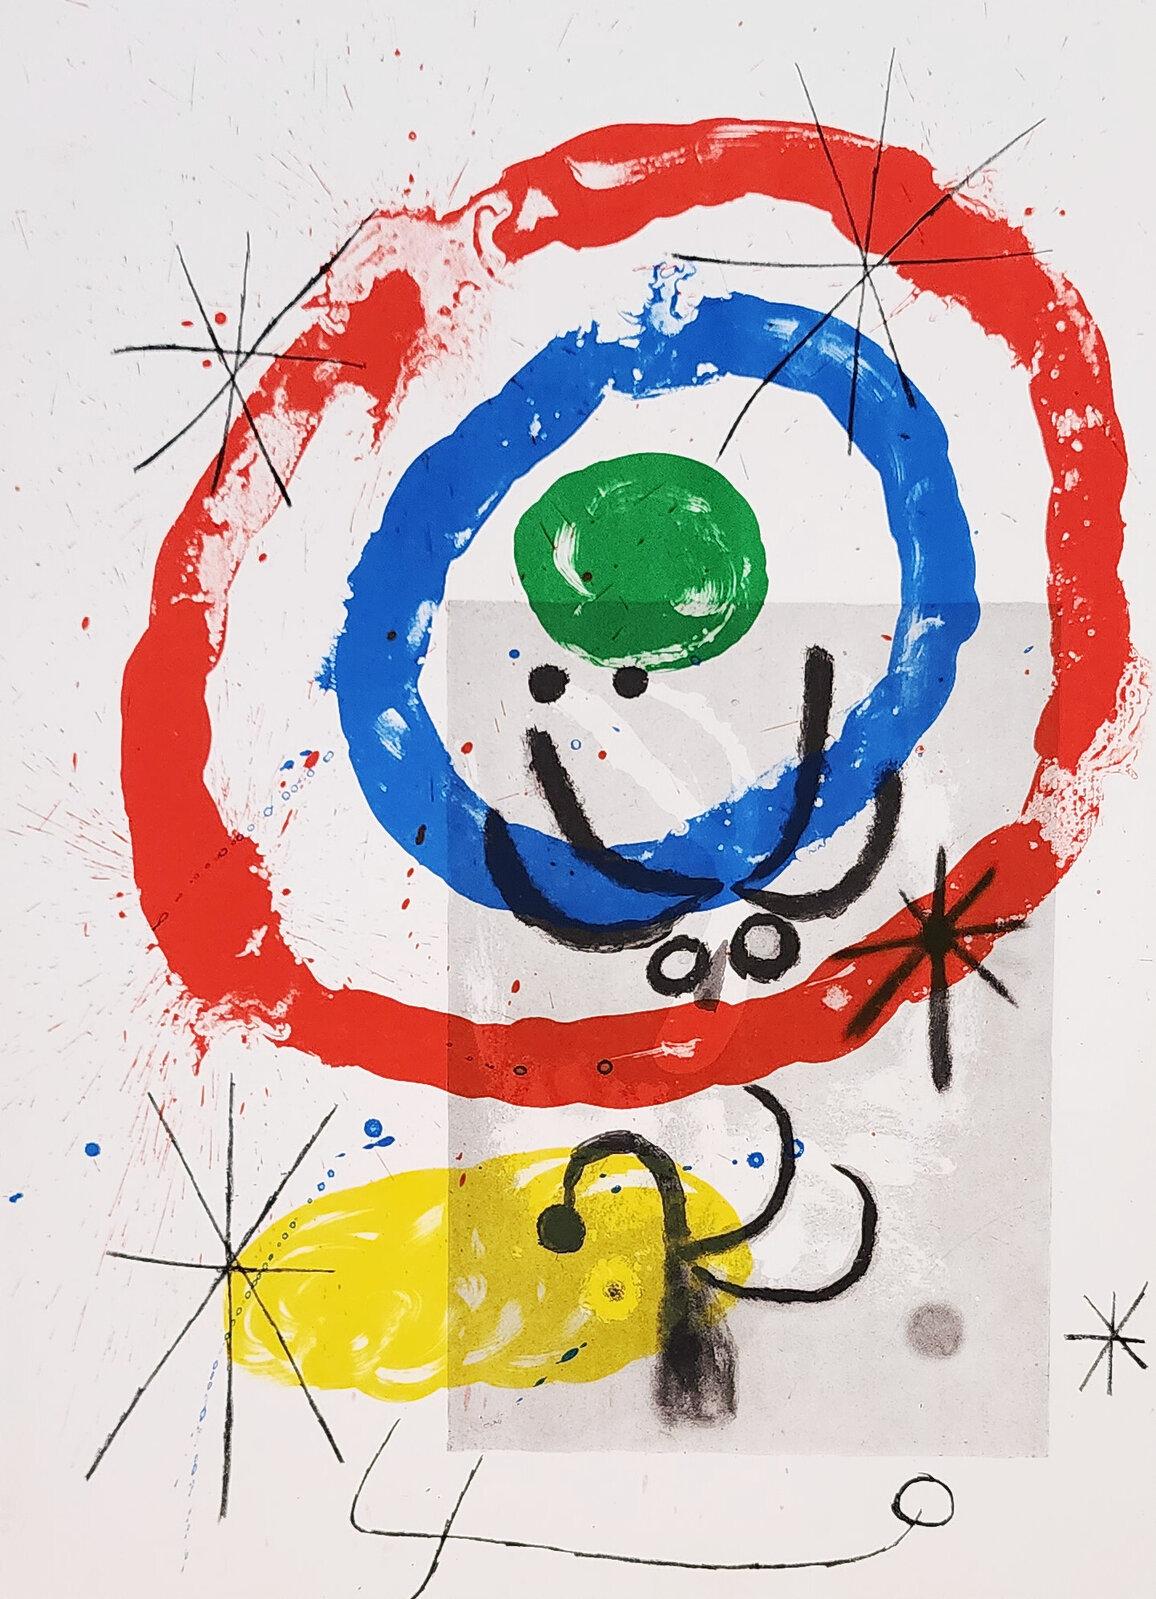 Miró, Composition, Derrière le miroir (after)